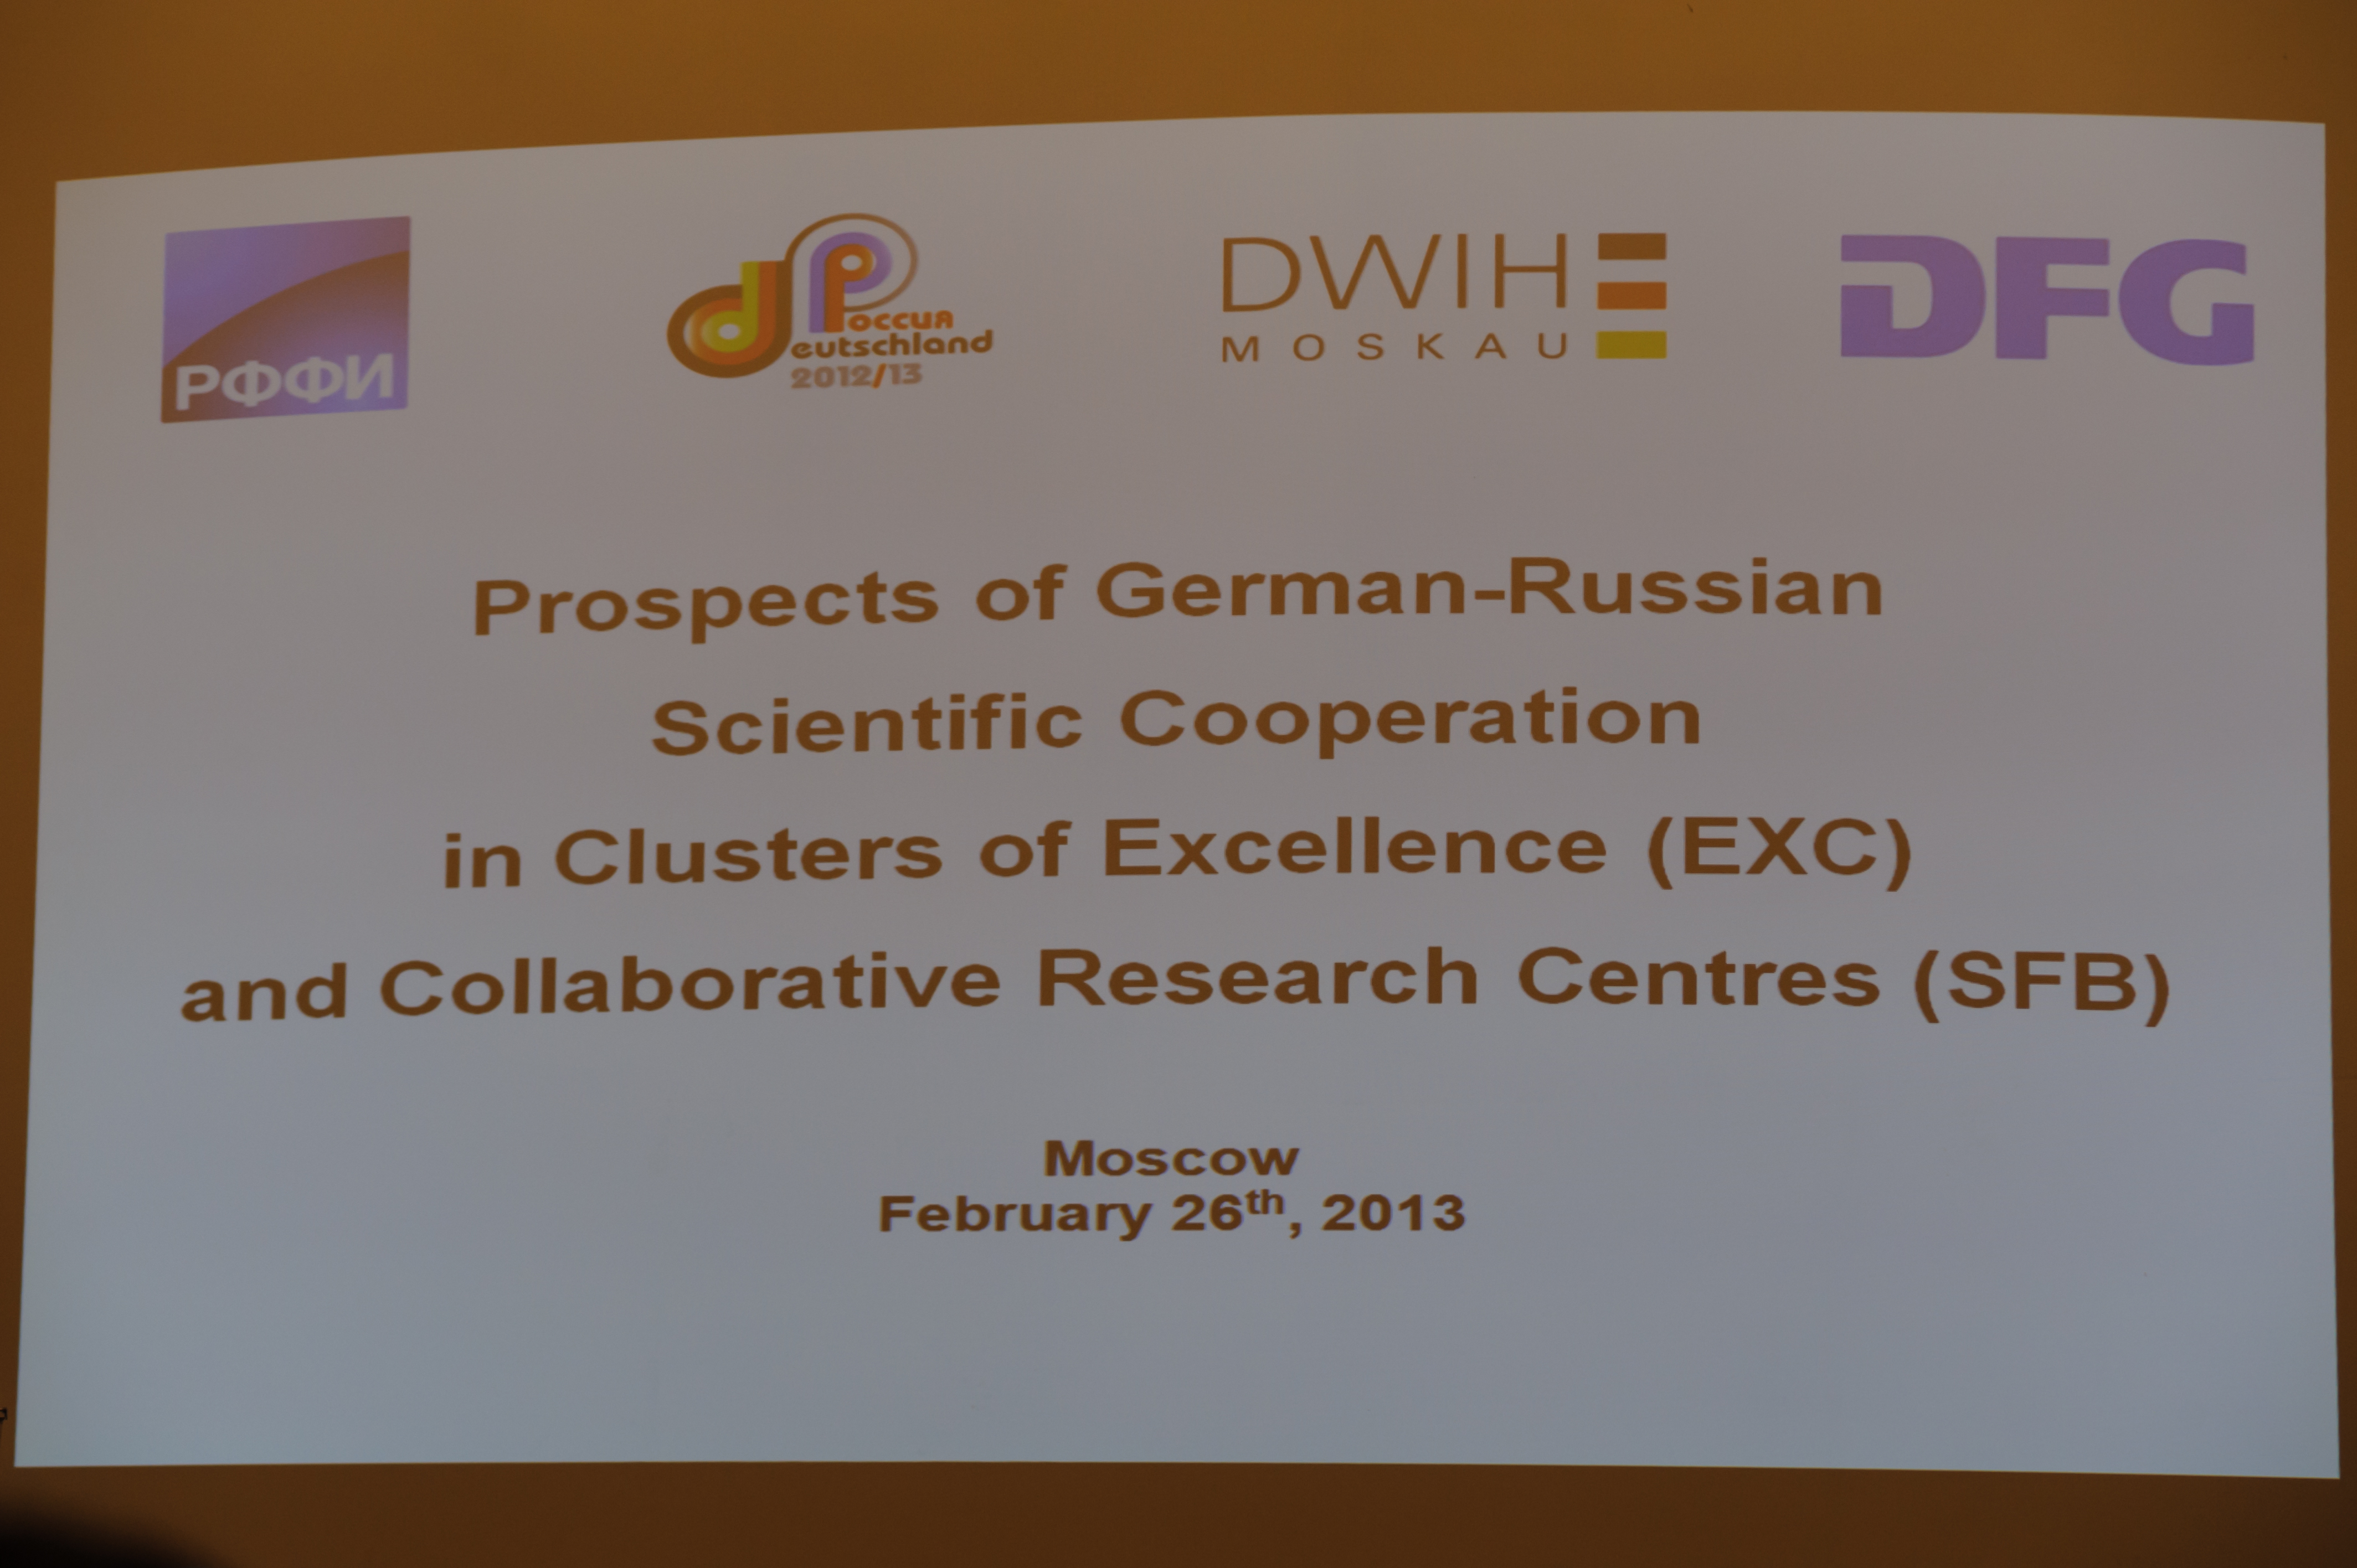 Перспективы создания центров совместных исследований (Collaborative Research Centres CRC/SFB) и кластеров передовых исследований (Clusters of Excellence /EXC) в рамках развития российско-германского научного сотрудничества»